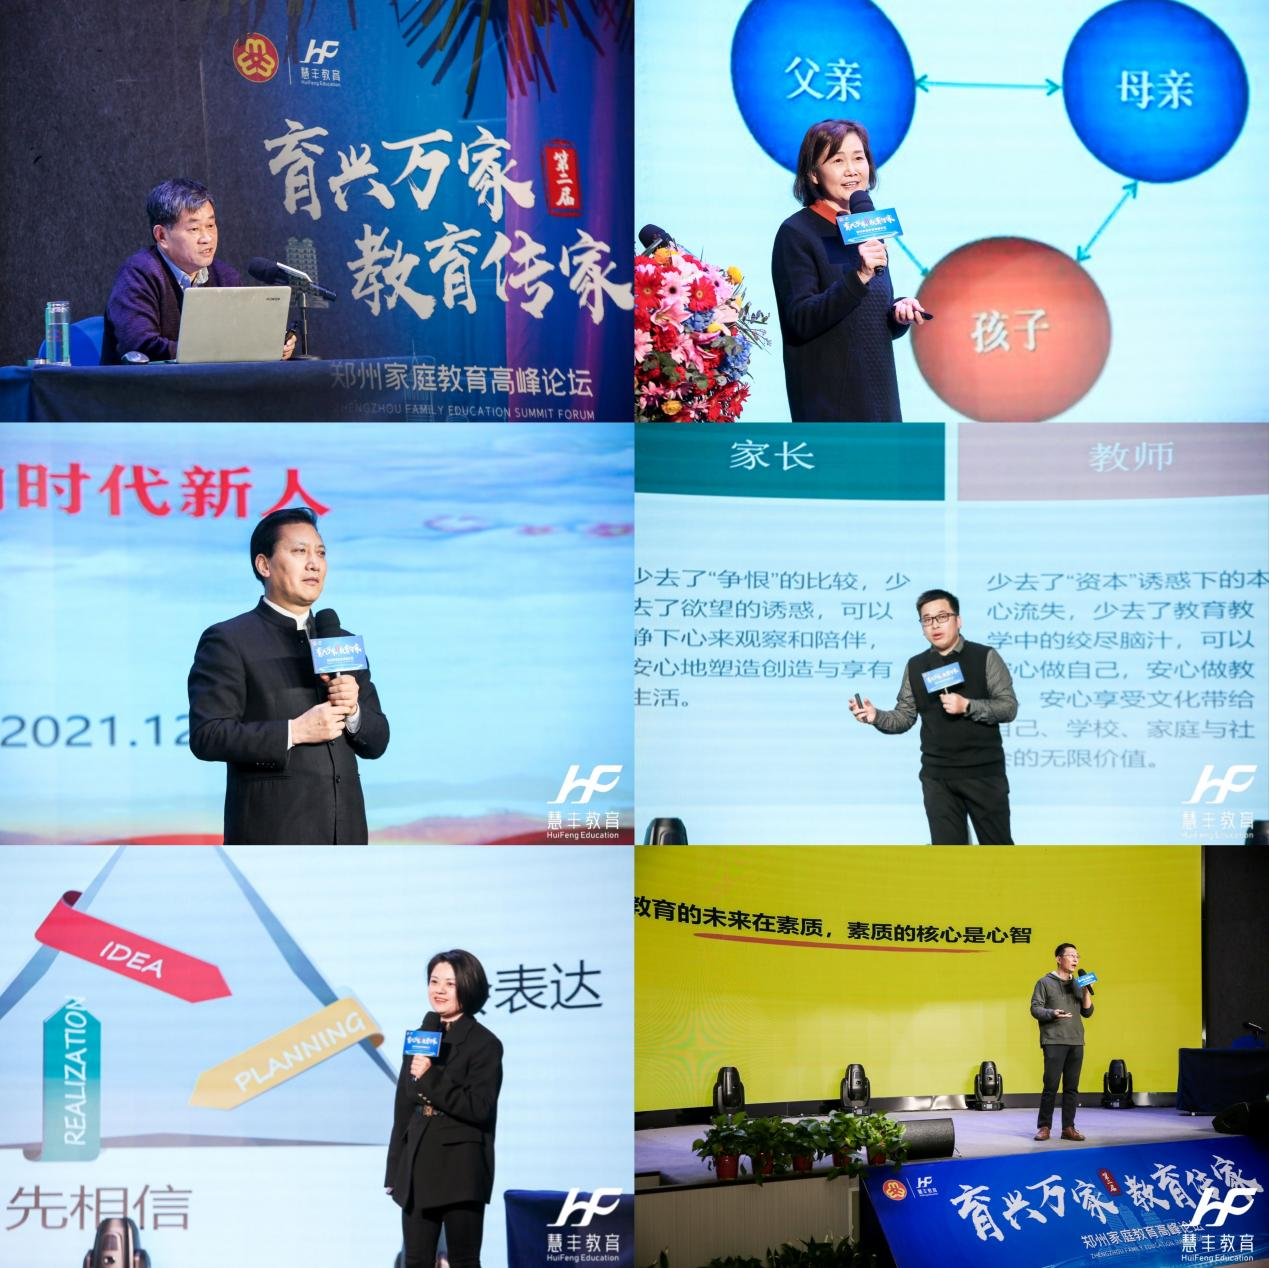 “育兴万家·教育传家”第二届郑州家庭教育高峰论坛成功举办